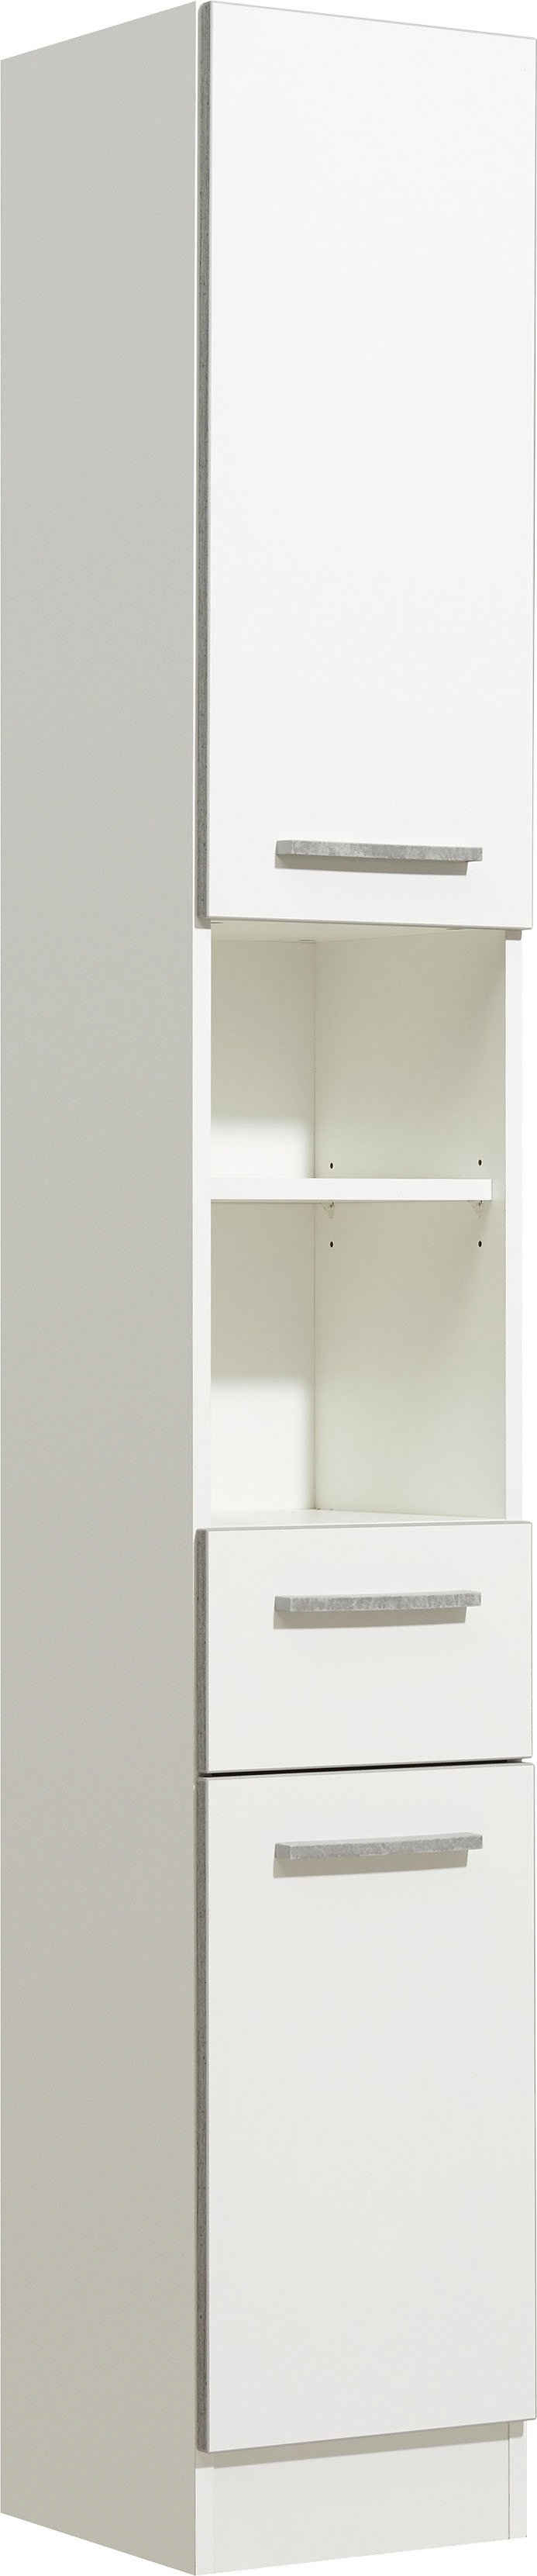 PELIPAL Hochschrank »Quickset 953« Breite 30 cm, Badschrank mit Sockel, Schubkasten, offene Fächer